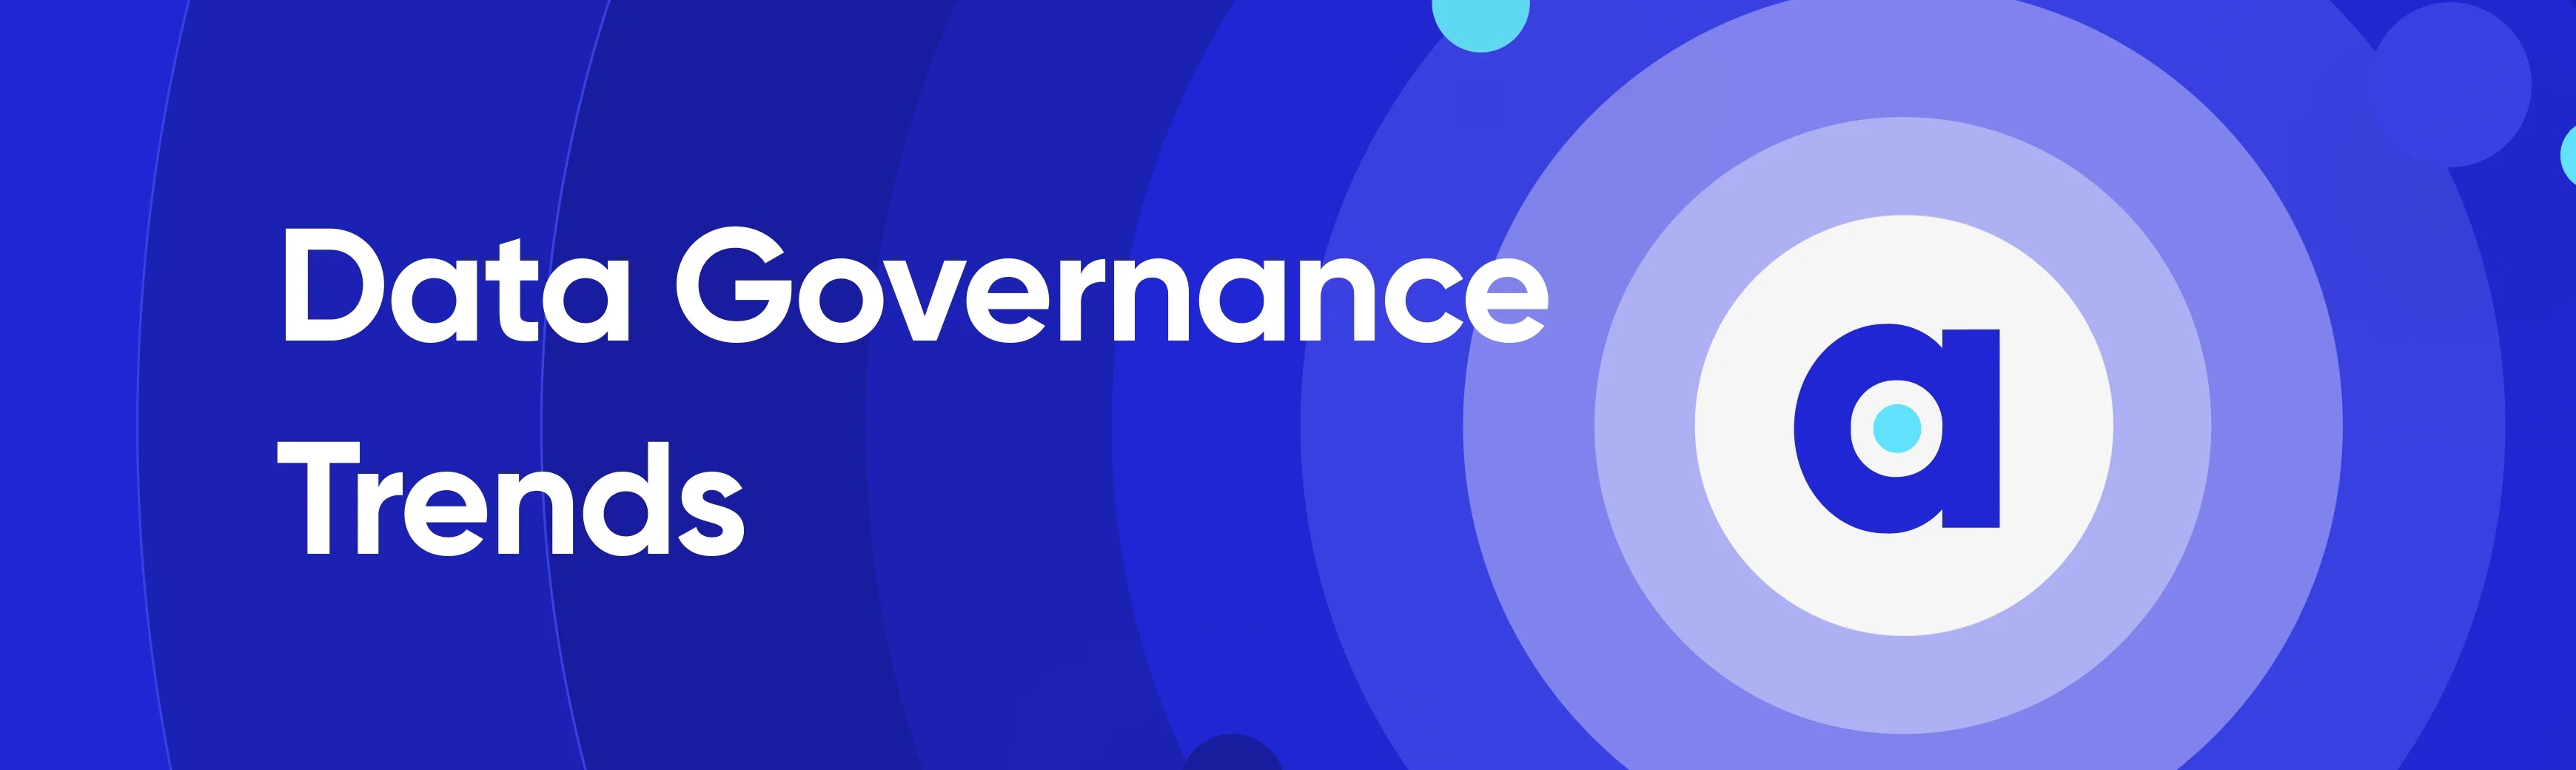 Data governance trends